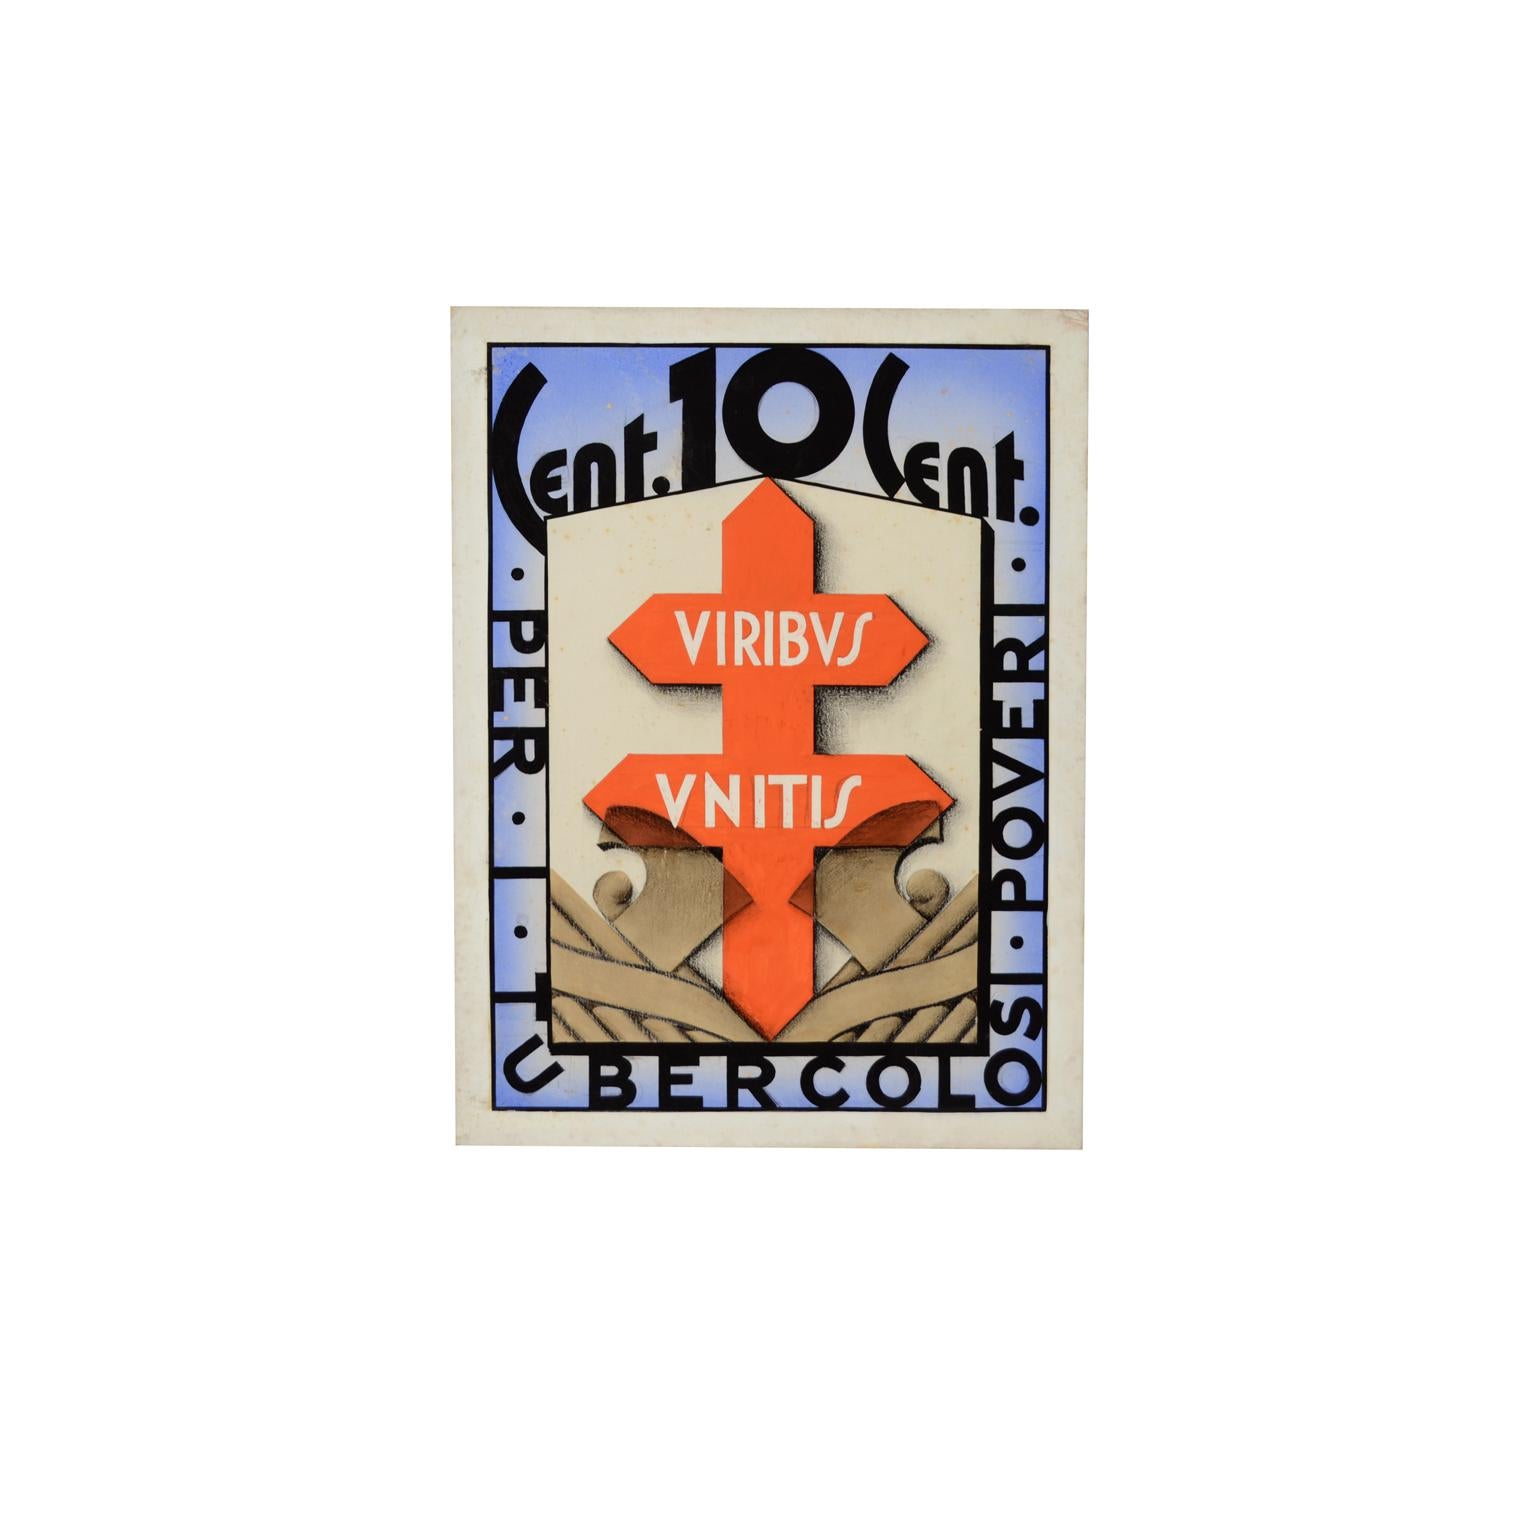 Esquisse d'une affiche futuriste, années 1930, campagne contre la tuberculose avec force unie 10 cents pour les pauvres malades de la tuberculose, pour la campagne nationale d'information sur la prévention de cette maladie. Mesures : cm 32 x 42,